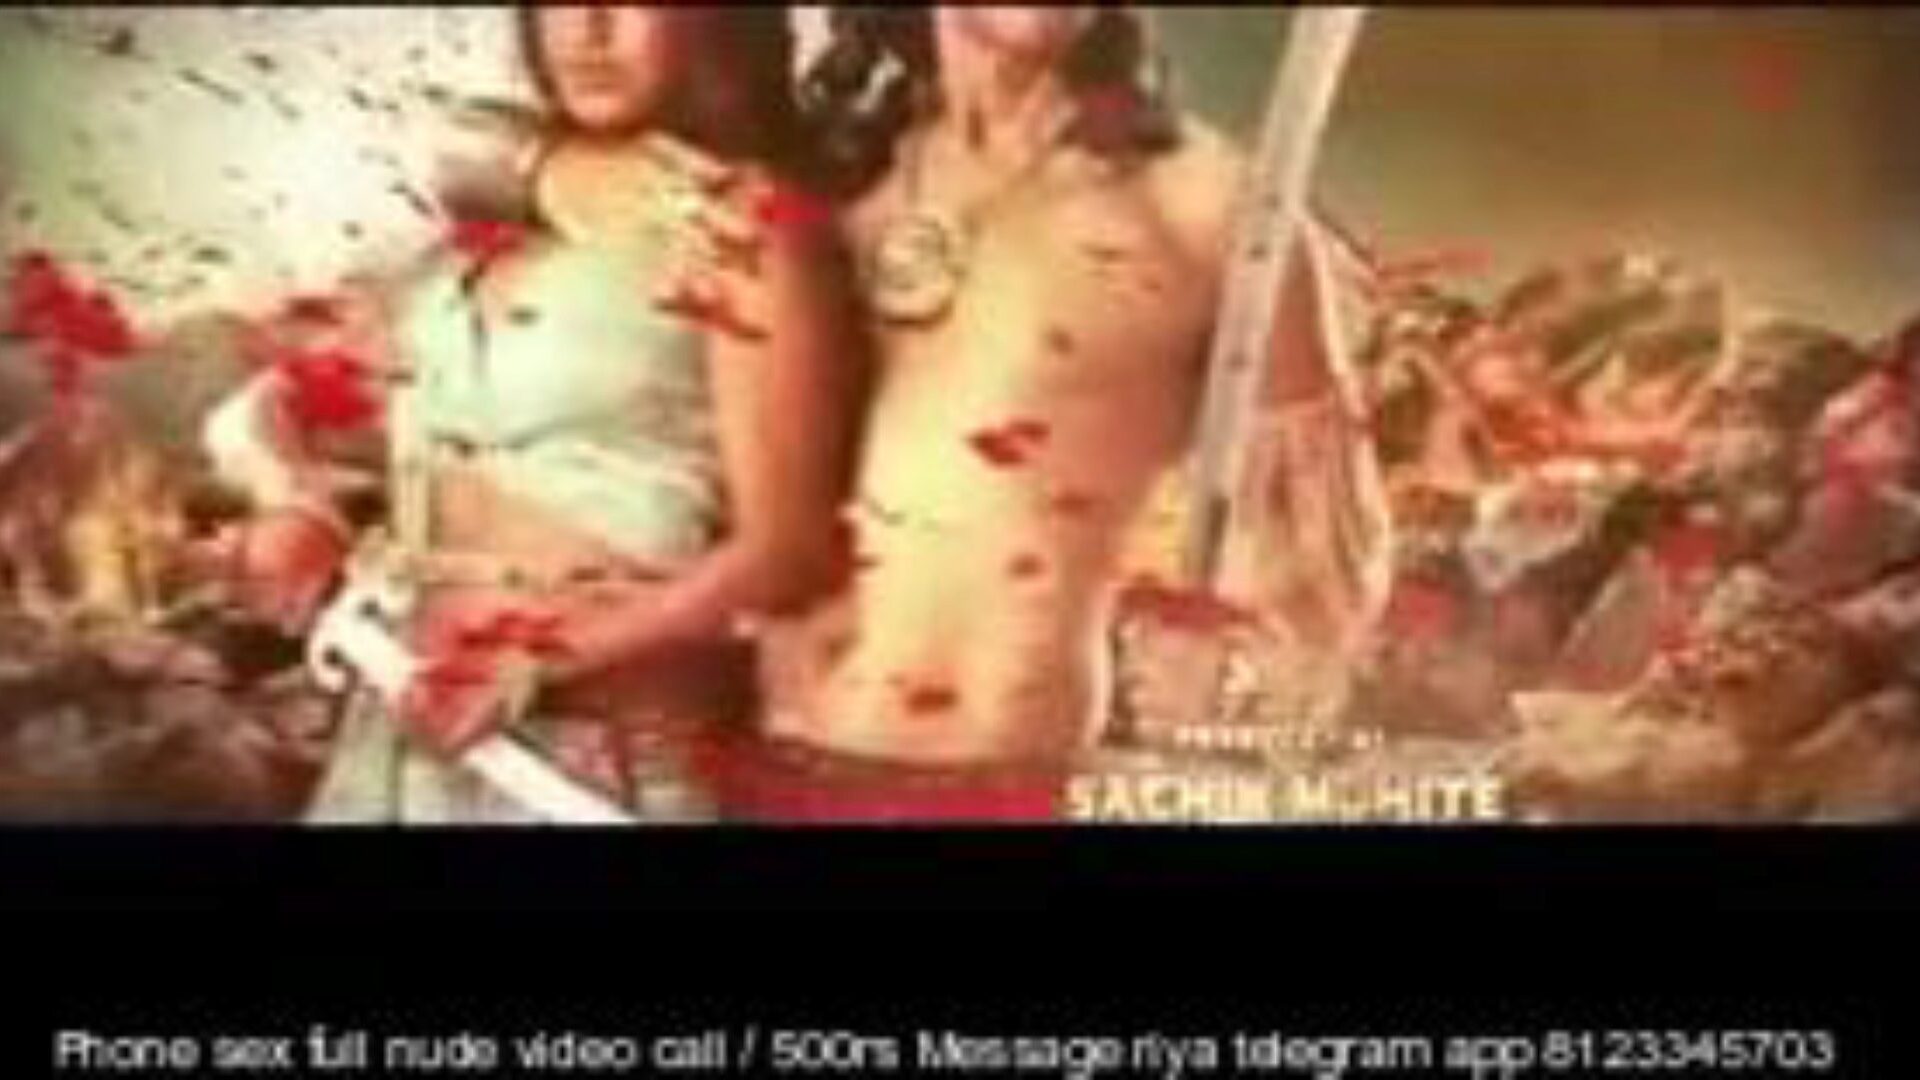 paurashpur 2020 hindi s01 ep 01 do 07, porno 1a: xhamster gledajte paurashpur 2020 hindi s01 ep 01 do 07 isječak na xhamsteru, najboljem web resursu za sex tube sa tonama besplatnih indijskih hindi pornohub-a i mobilnih hindi porno filmova